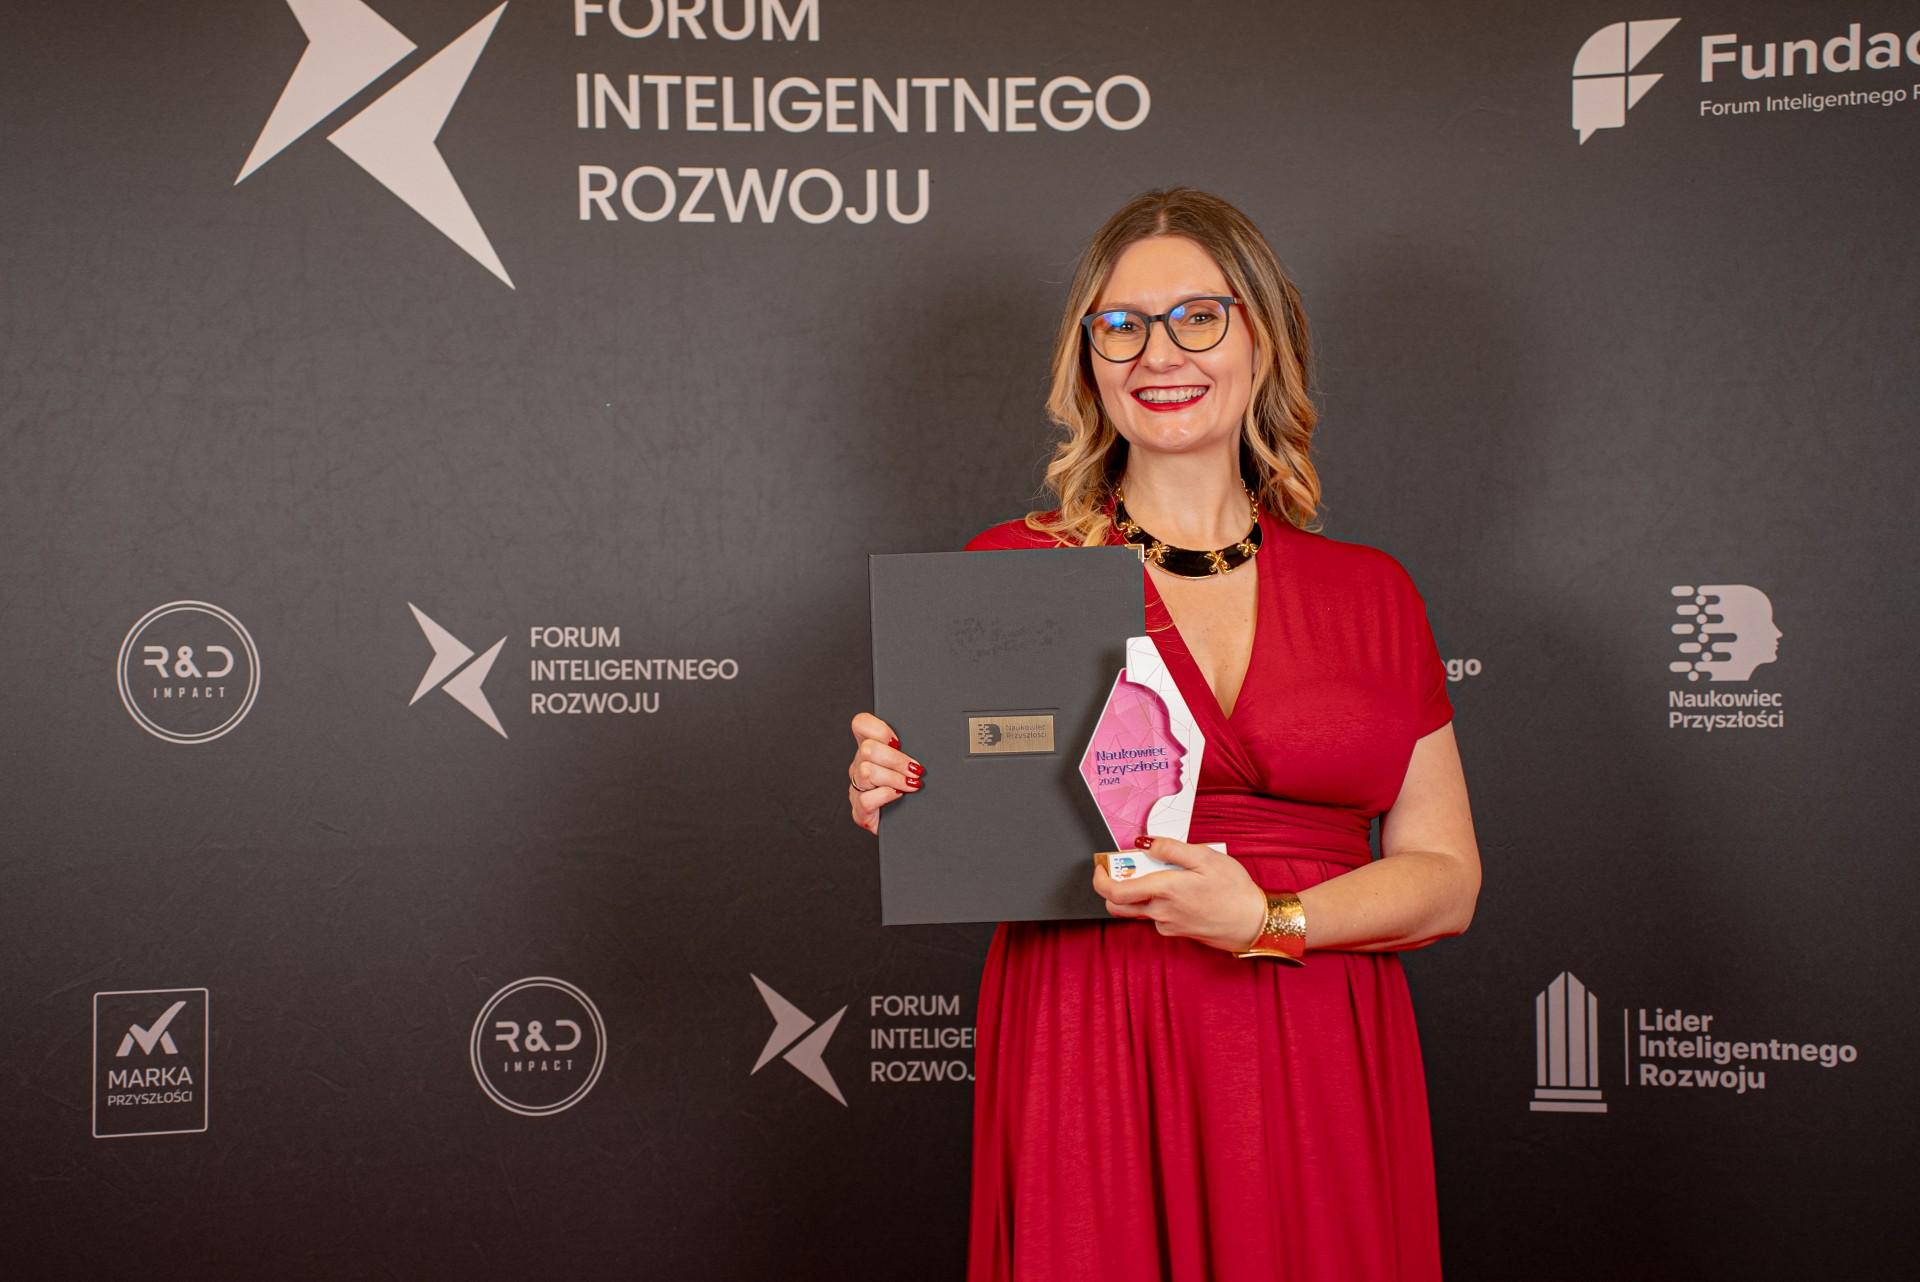 Dr Wróblewska stojąca ze statuetką na czerwonym dywanie, w tle widać ściankę z napisem Forum Inteligentnego Rozwoju